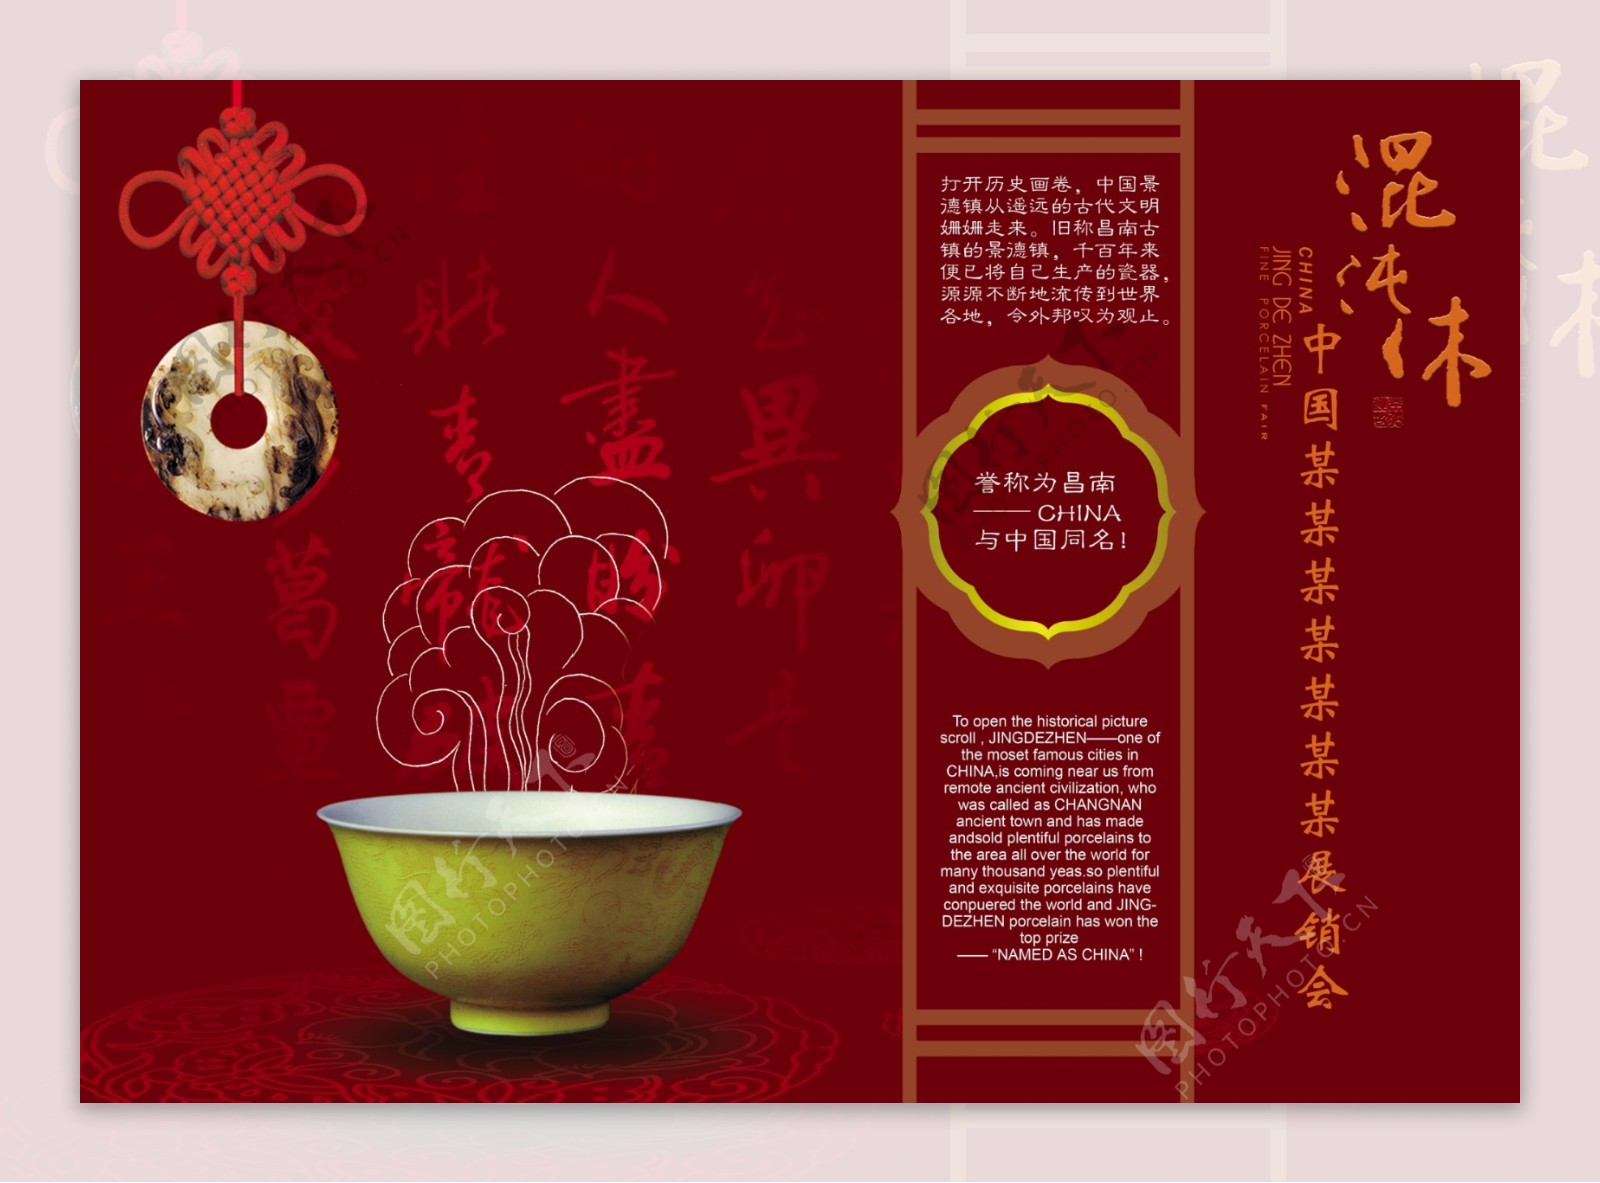 中国传统饮食文化